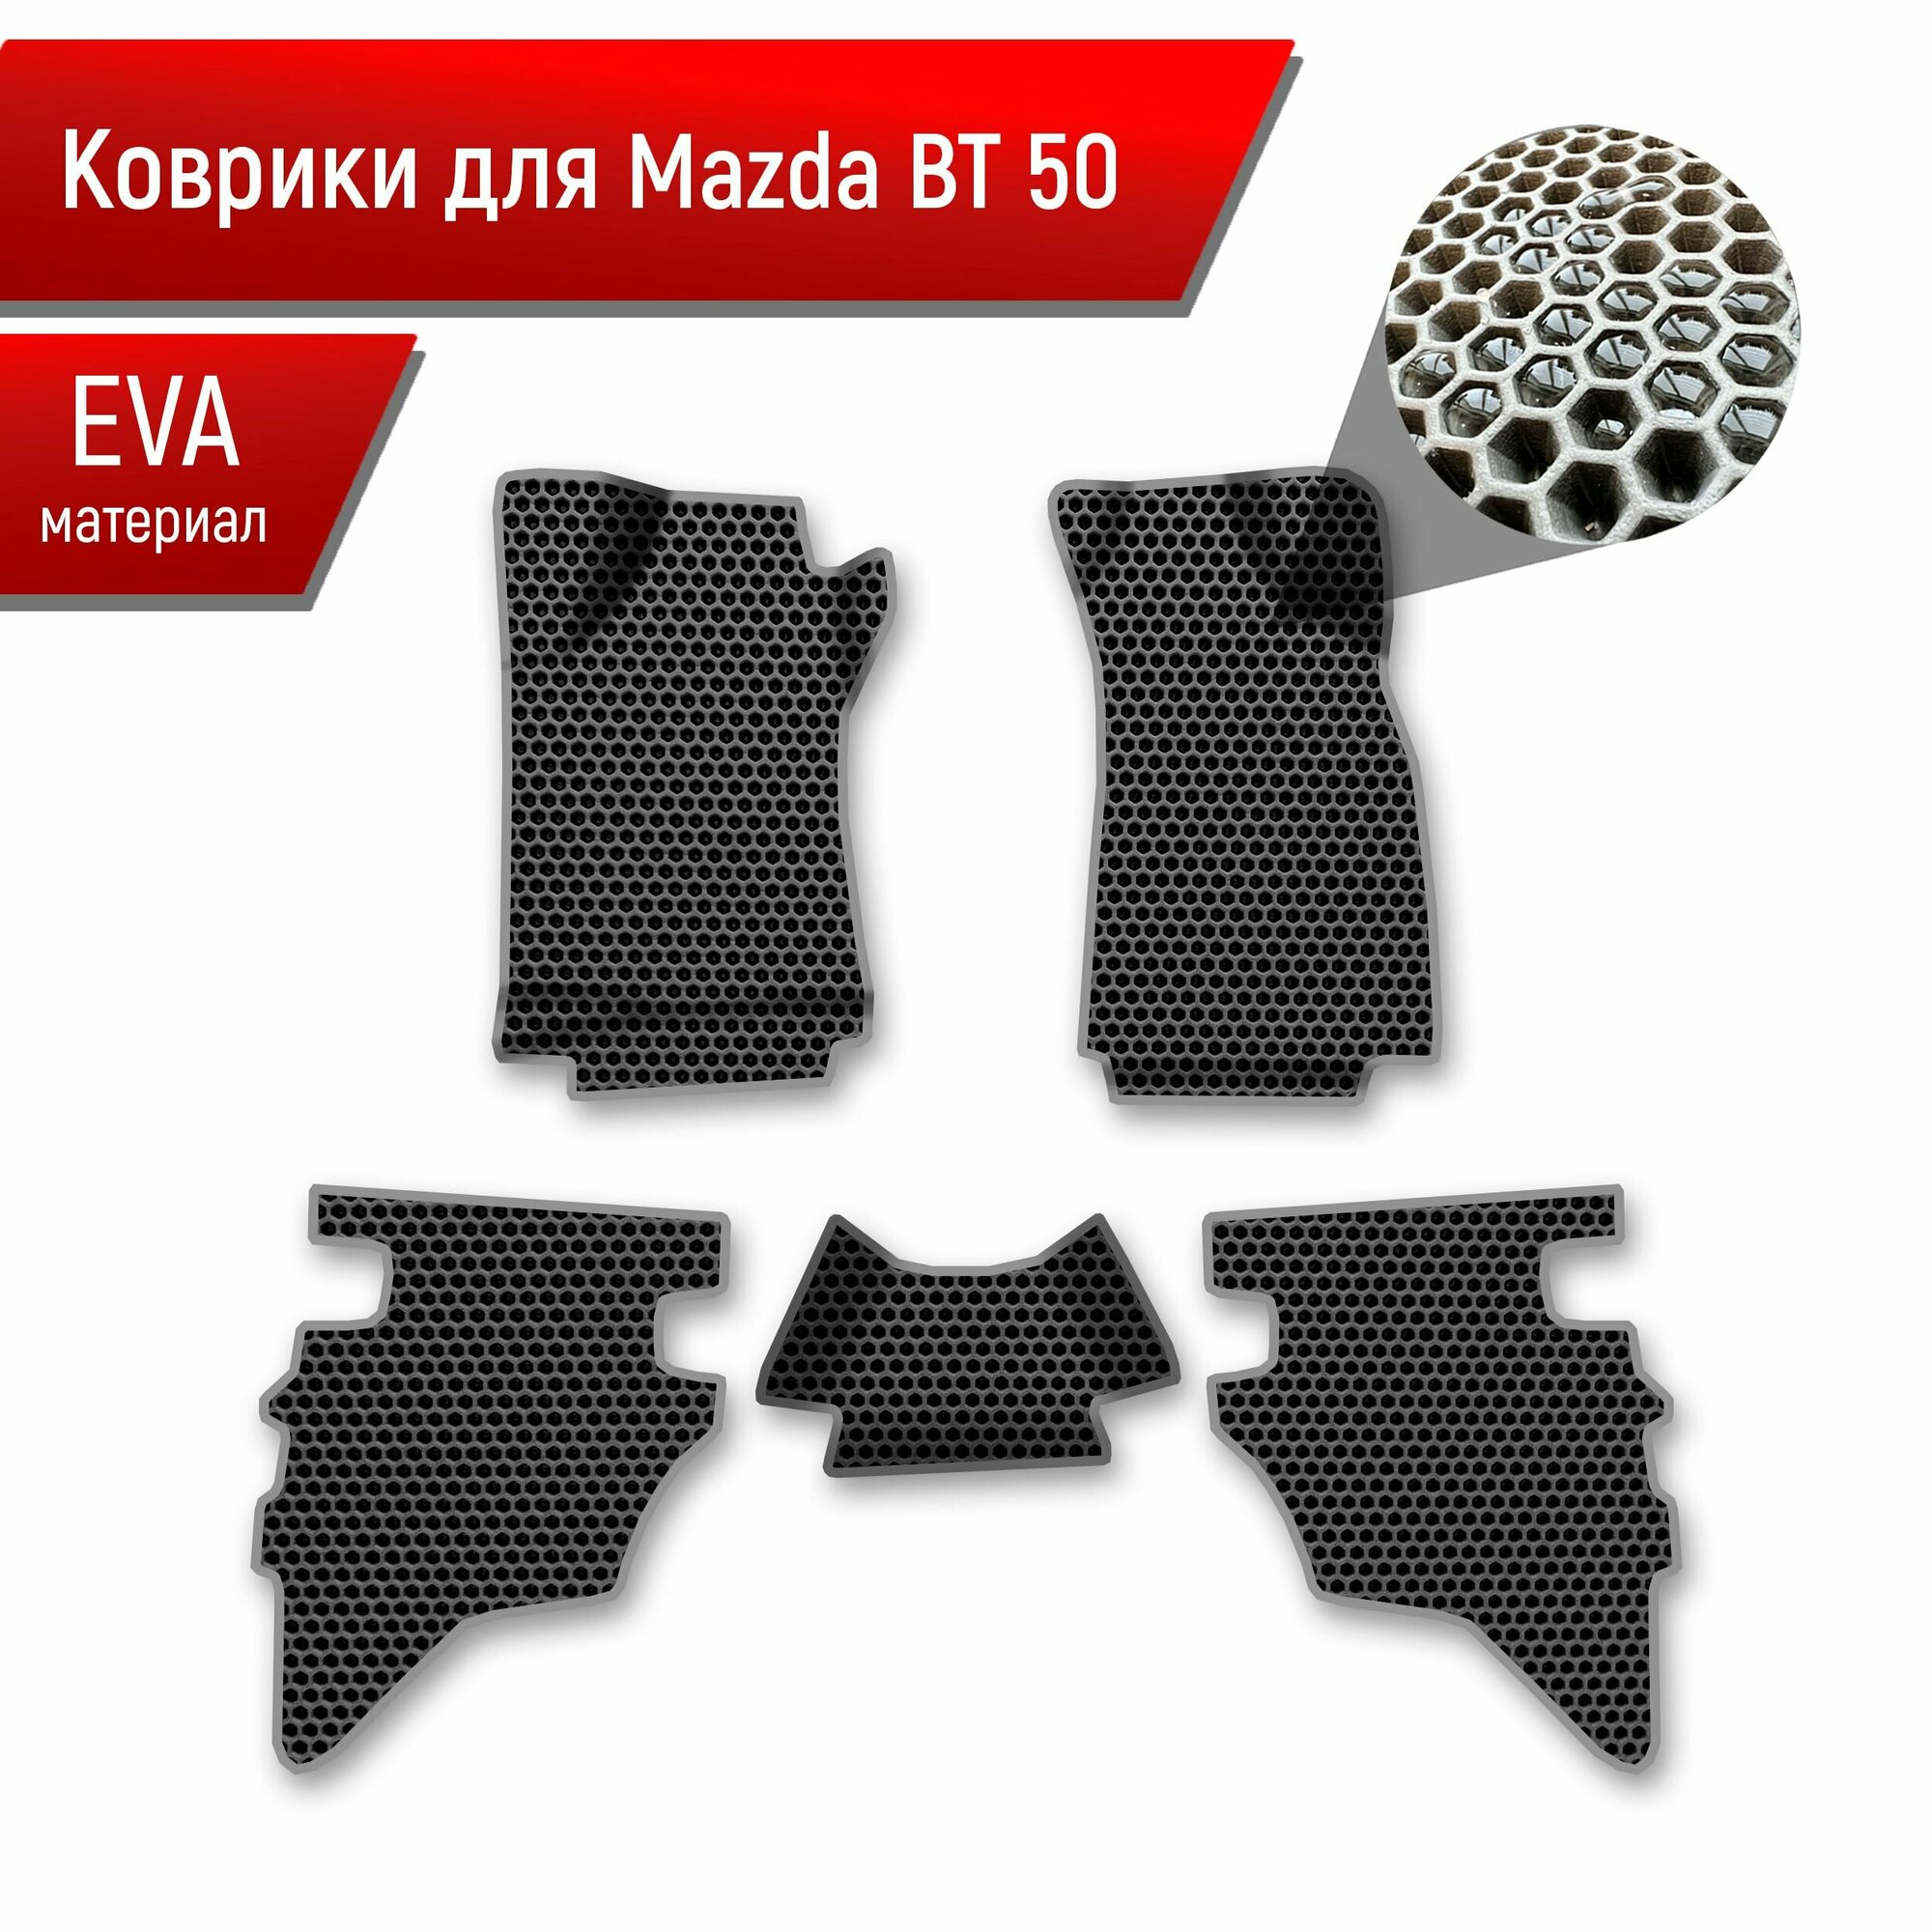 Коврики ЭВА сота для авто Mazda BT-50 1 / Мазда ВТ-50 2006-2011 Г. В. Чёрный с Серым кантом